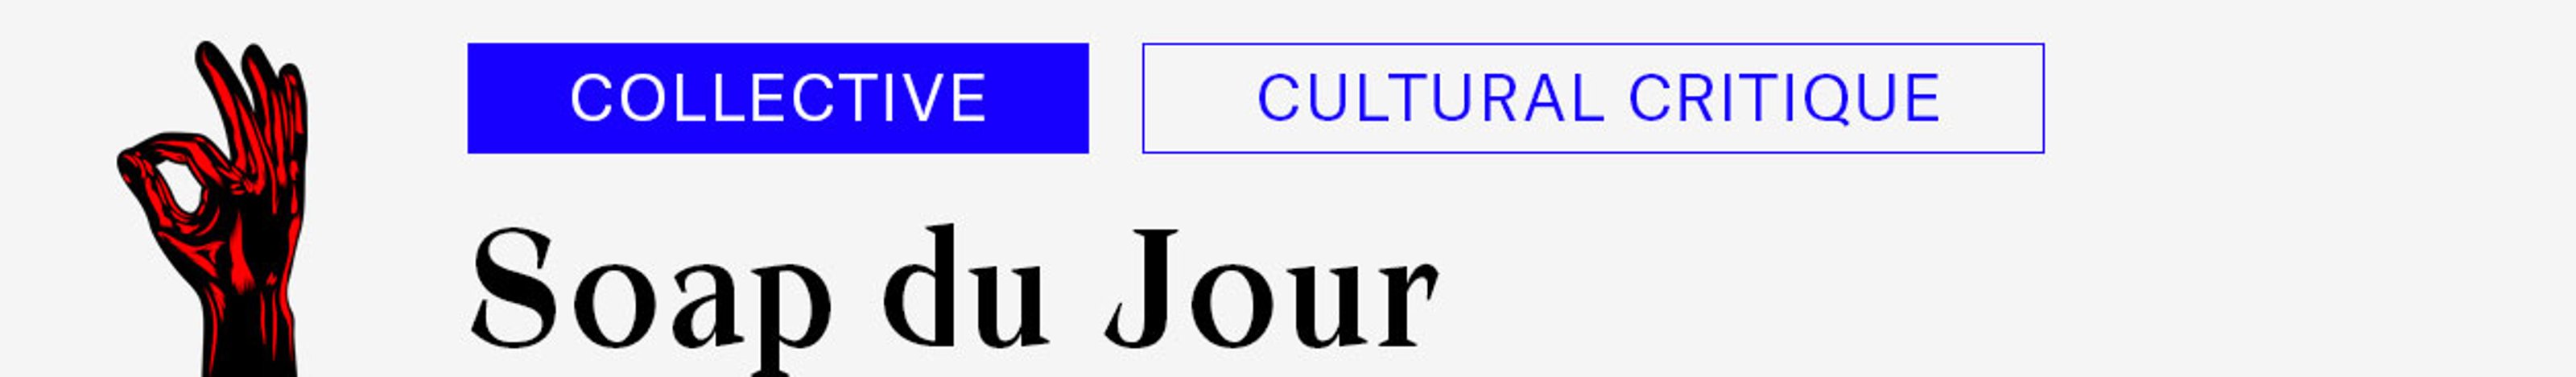 Soap du Jour: Collective, Cultural Critique